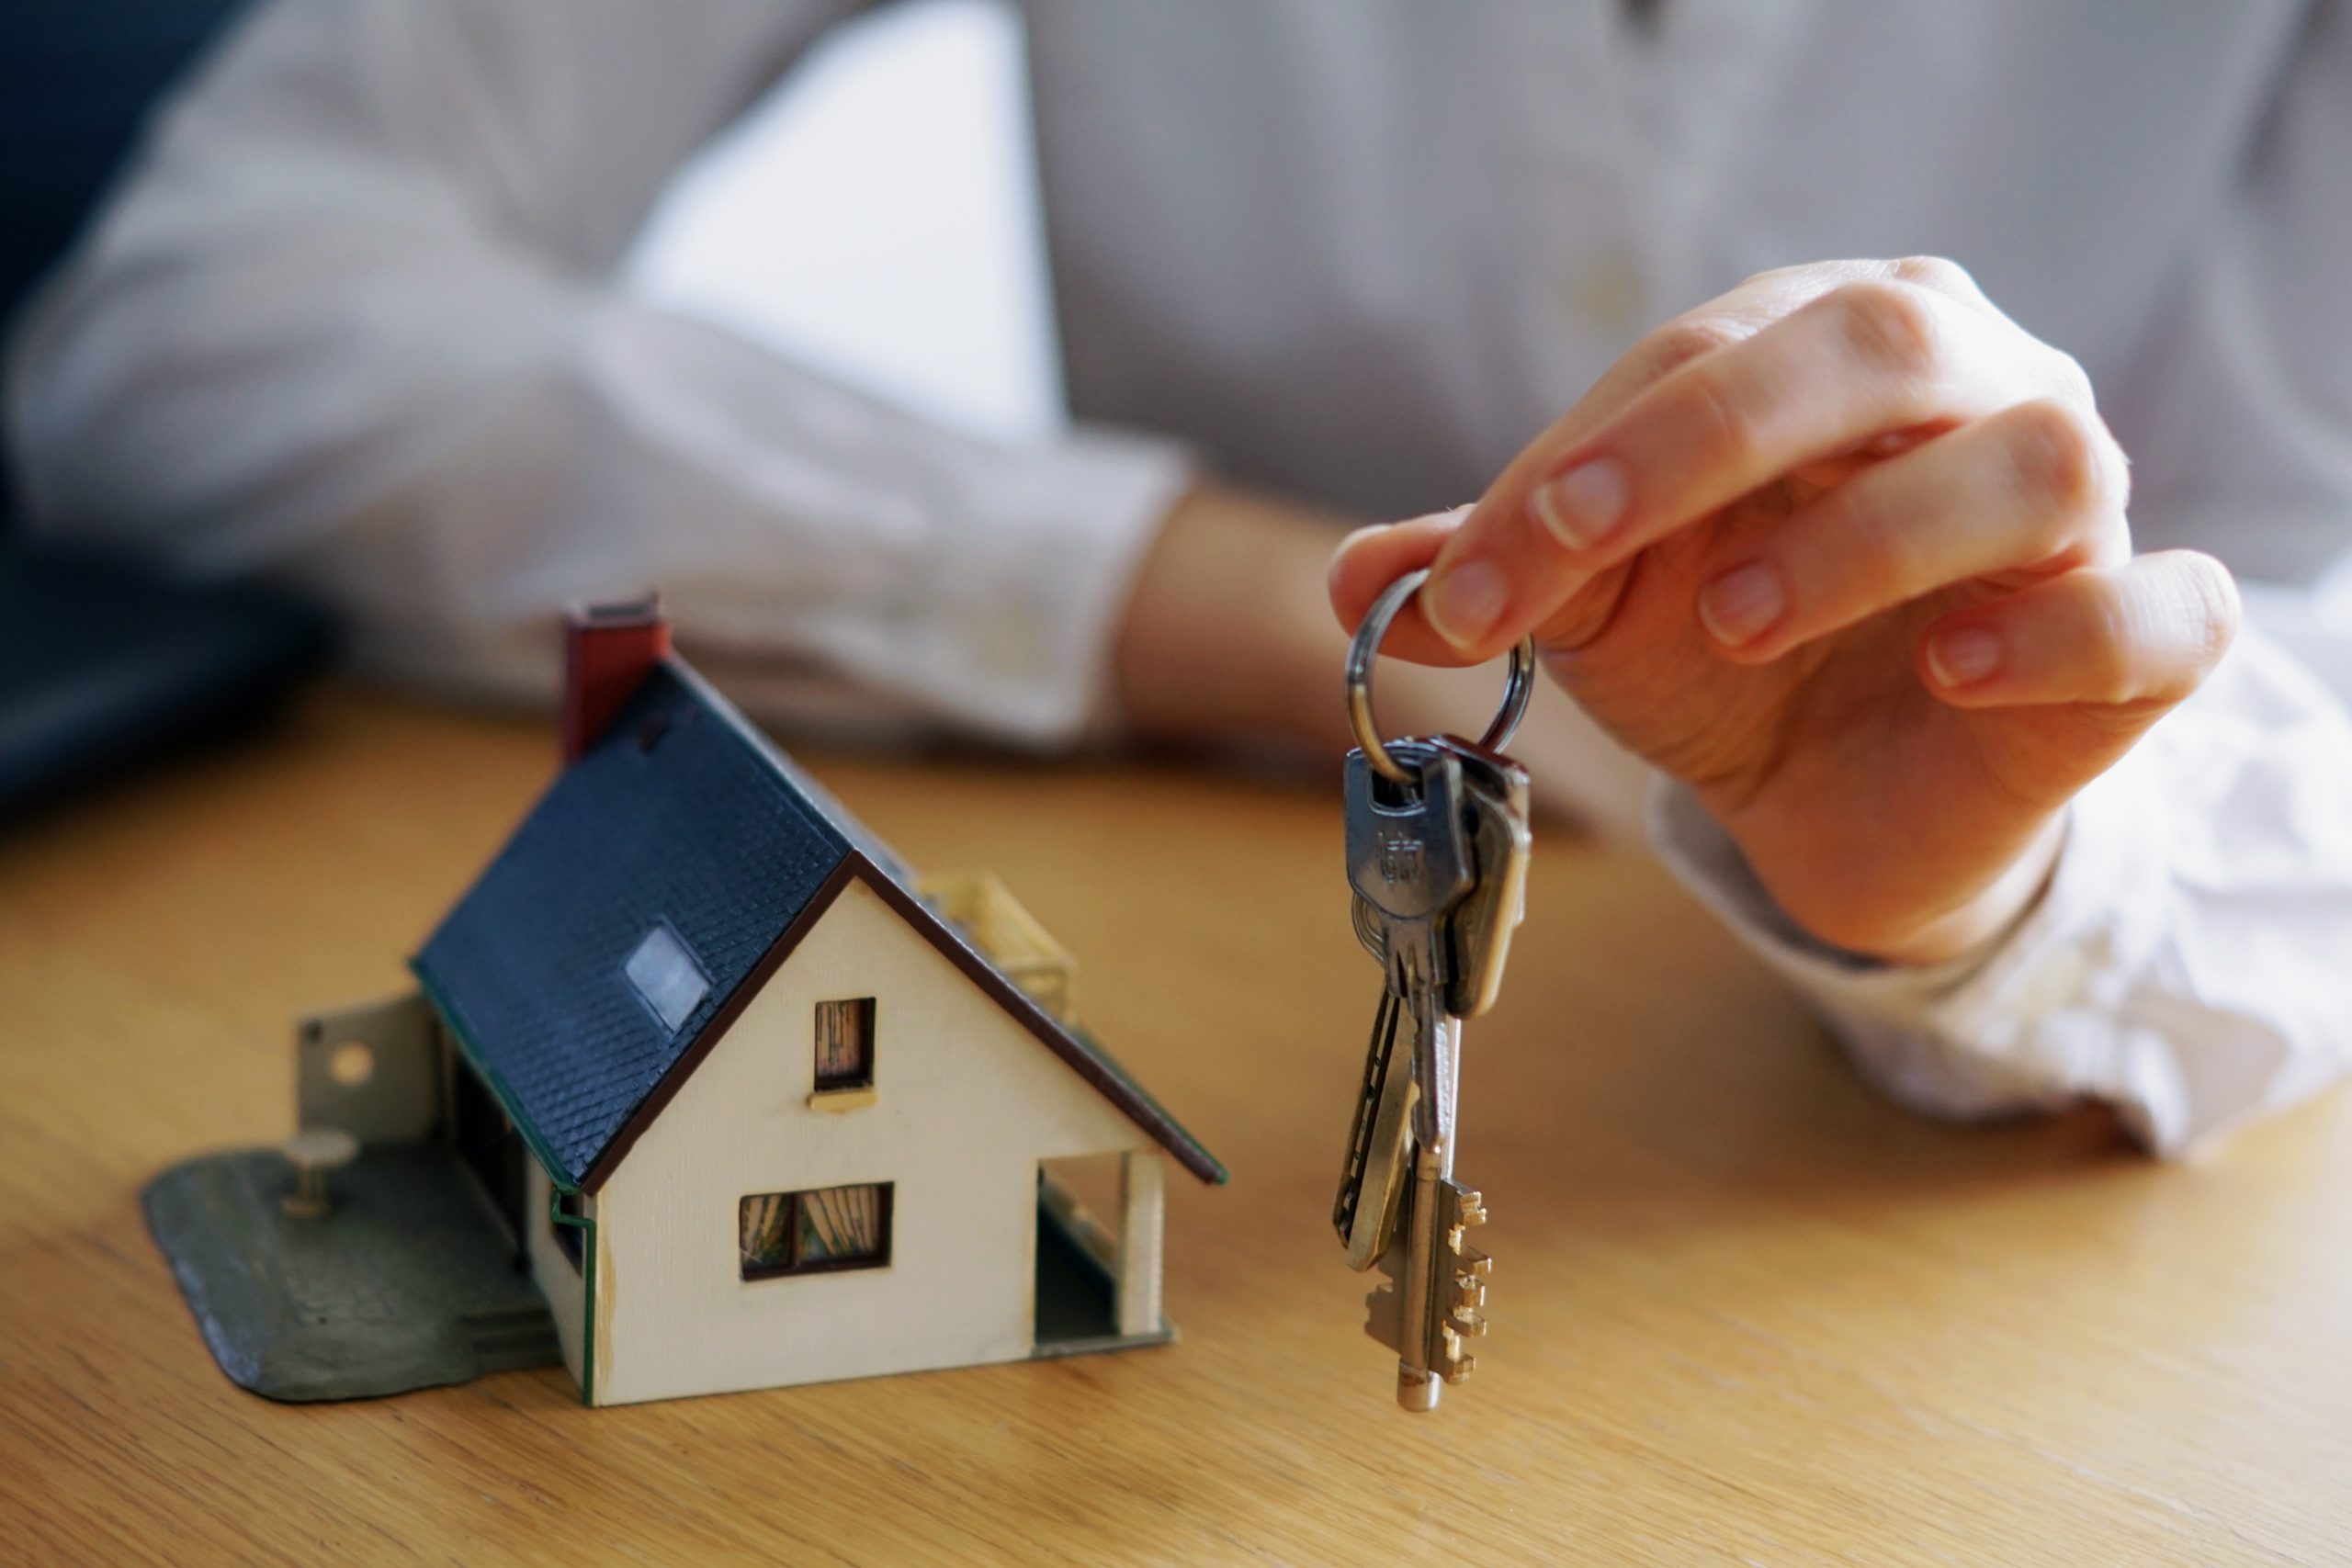 Comprar casa: uma pessoa segura as chaves de um imóvel ao lado de uma miniatura de casa